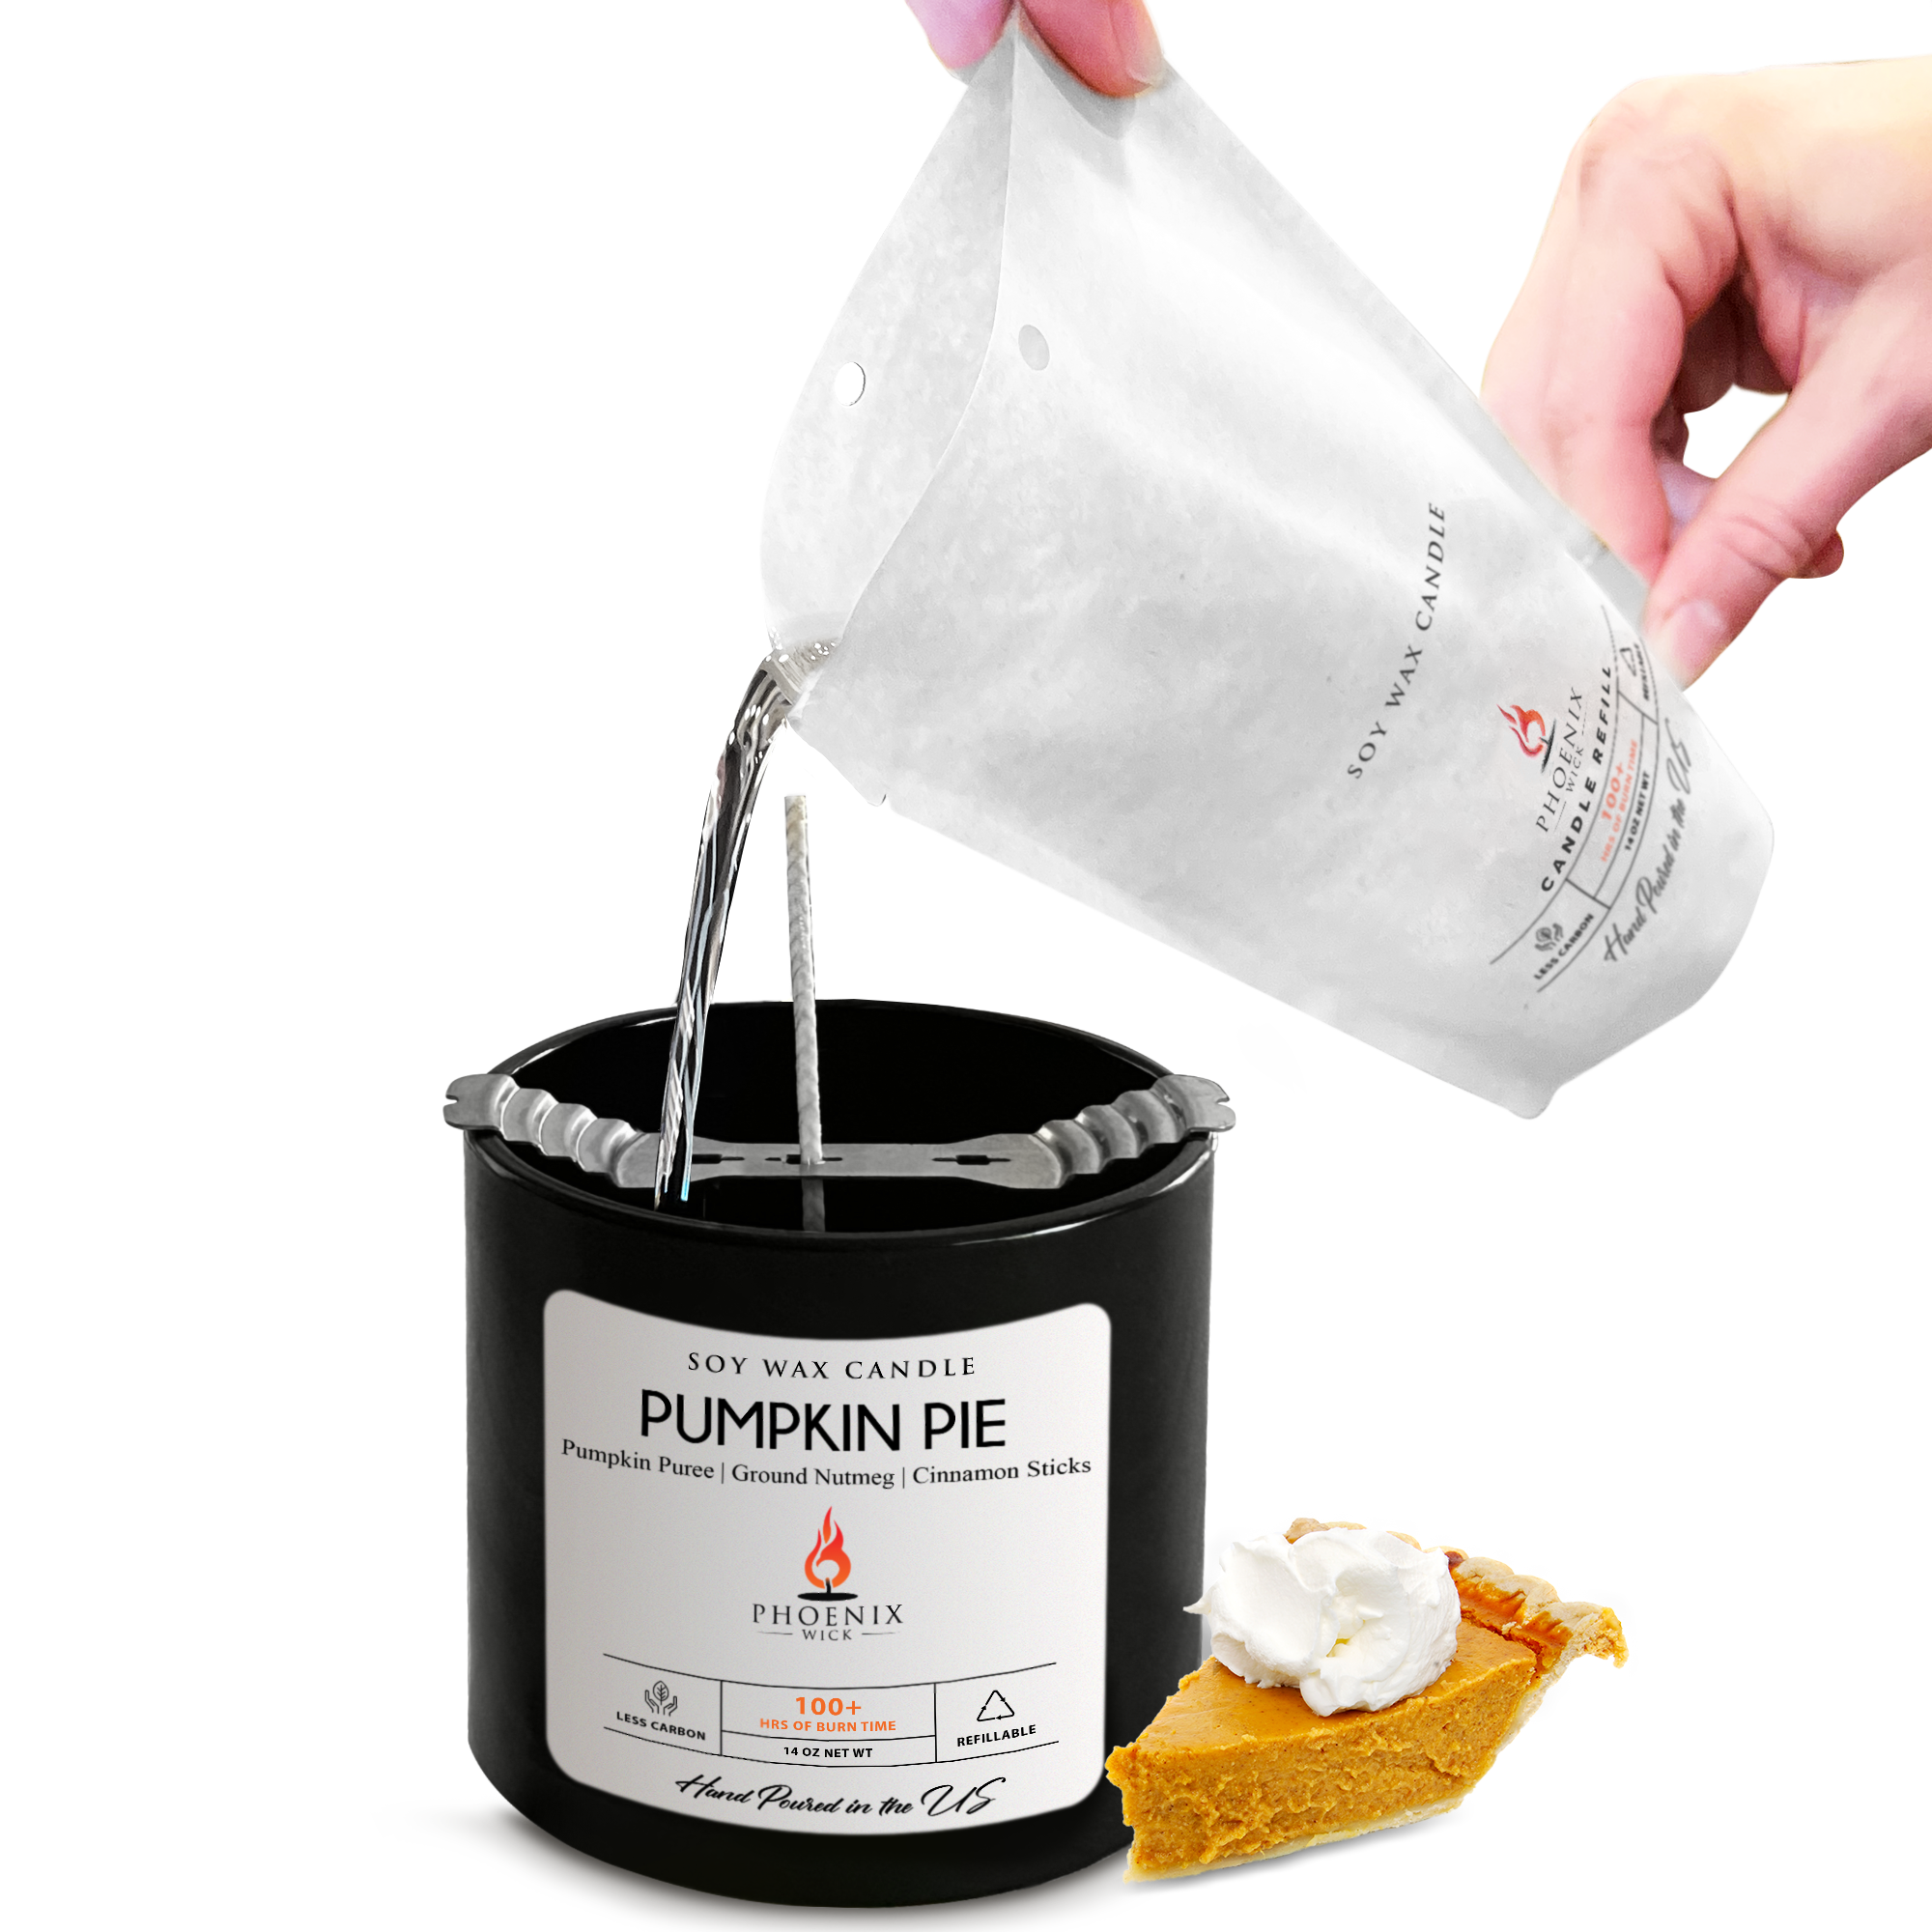 Pumpkin Pie - Candle-Making Kit + Jar